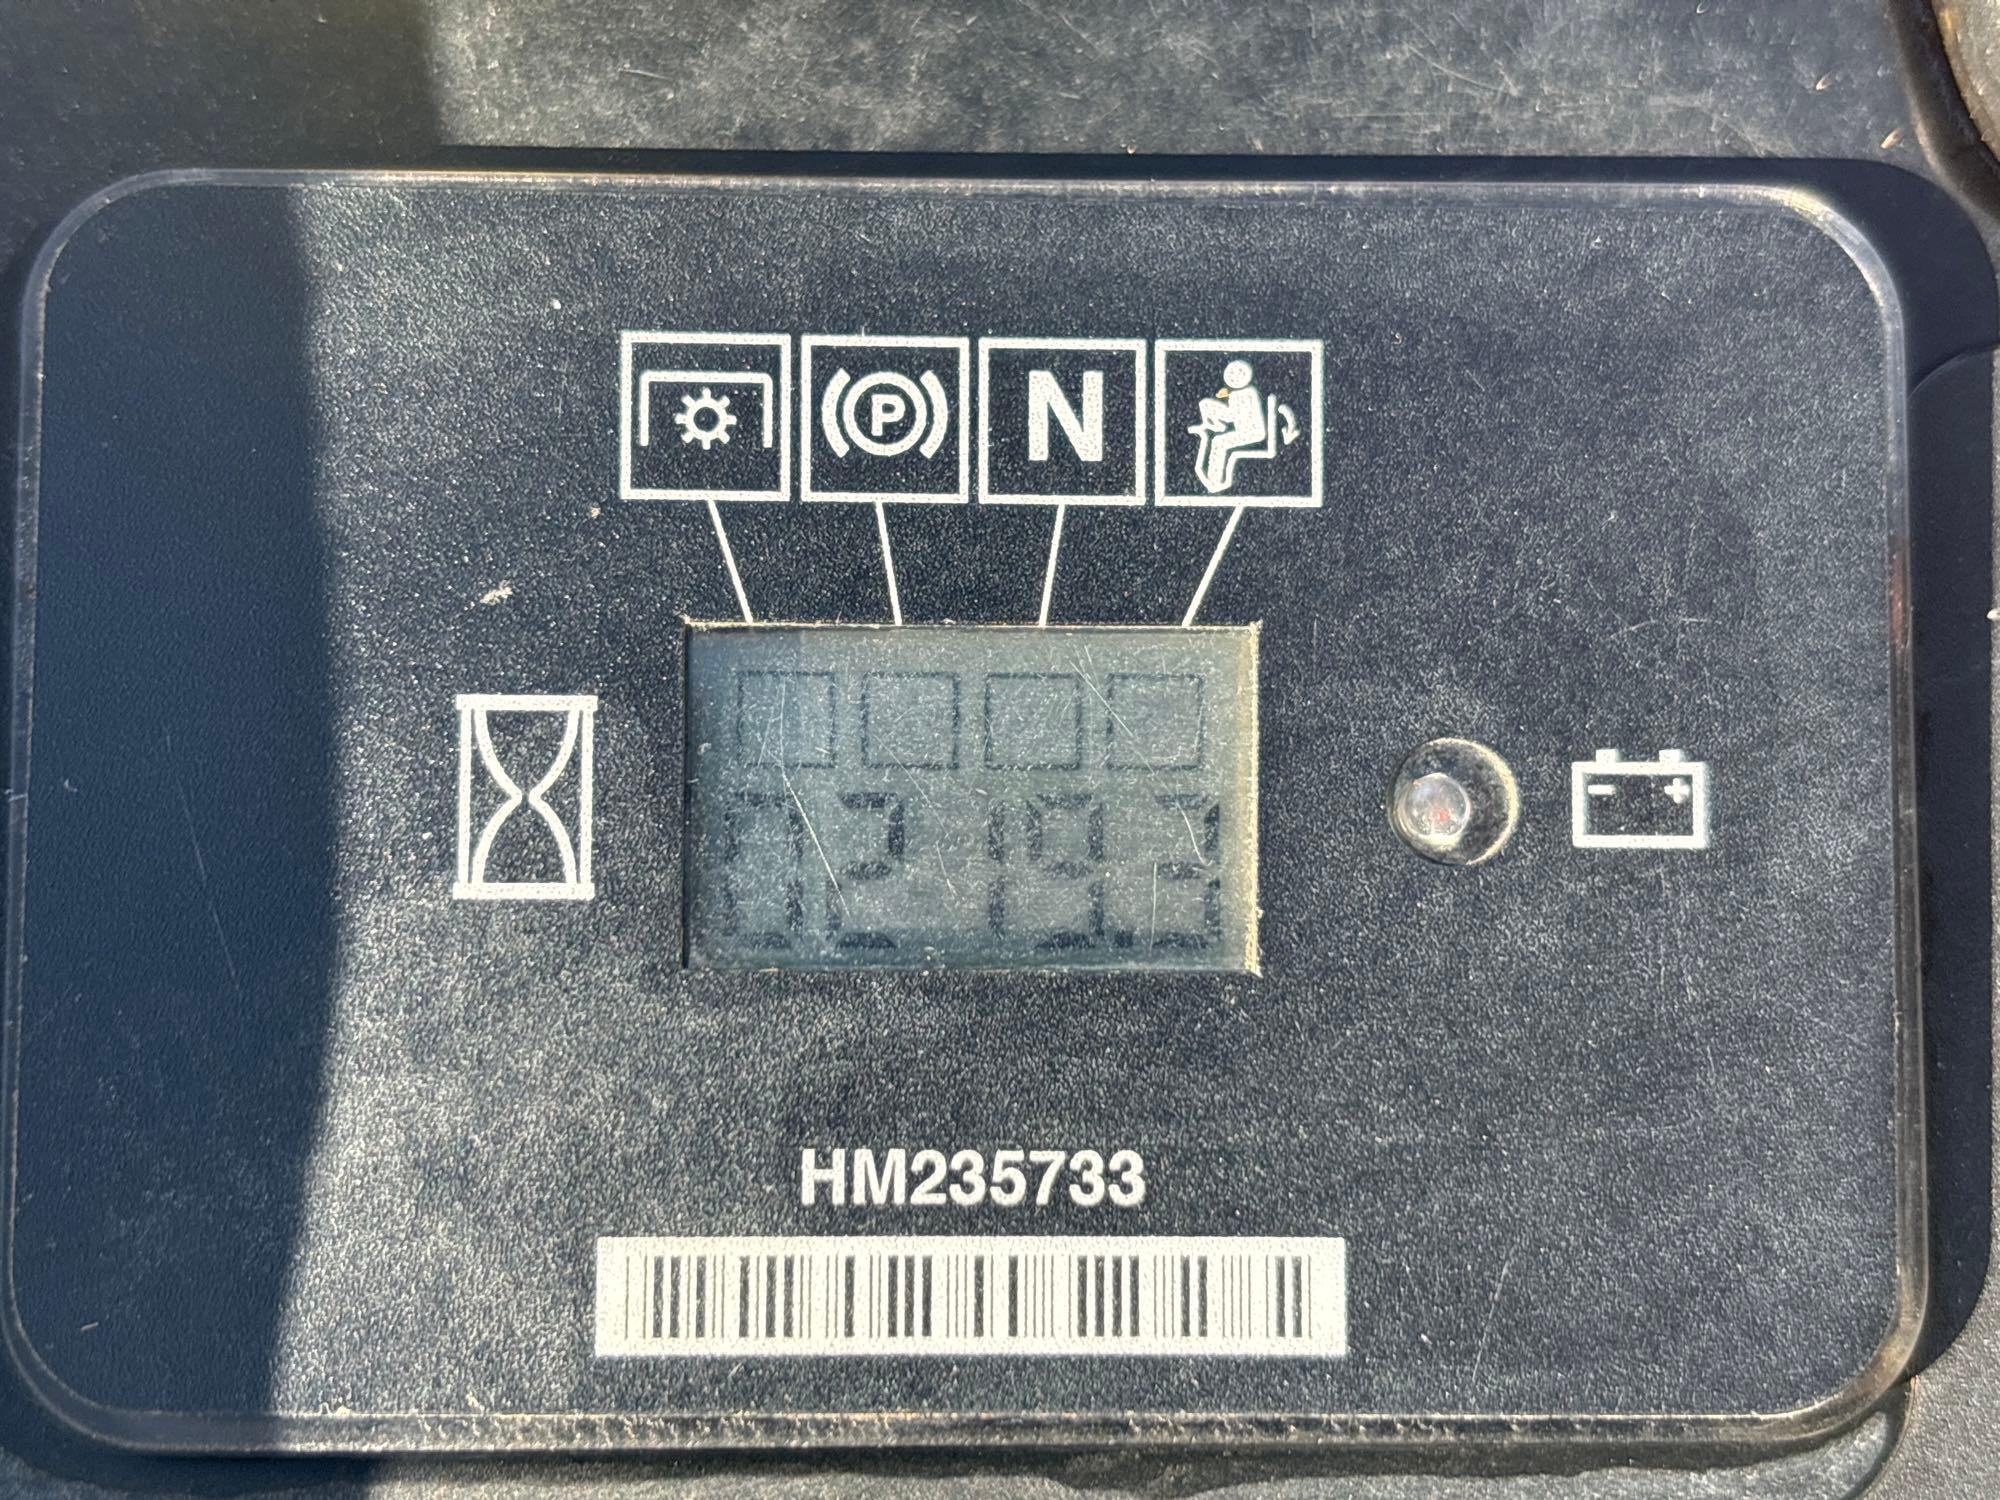 Toro Titan HD 1500 52in Zero Turn